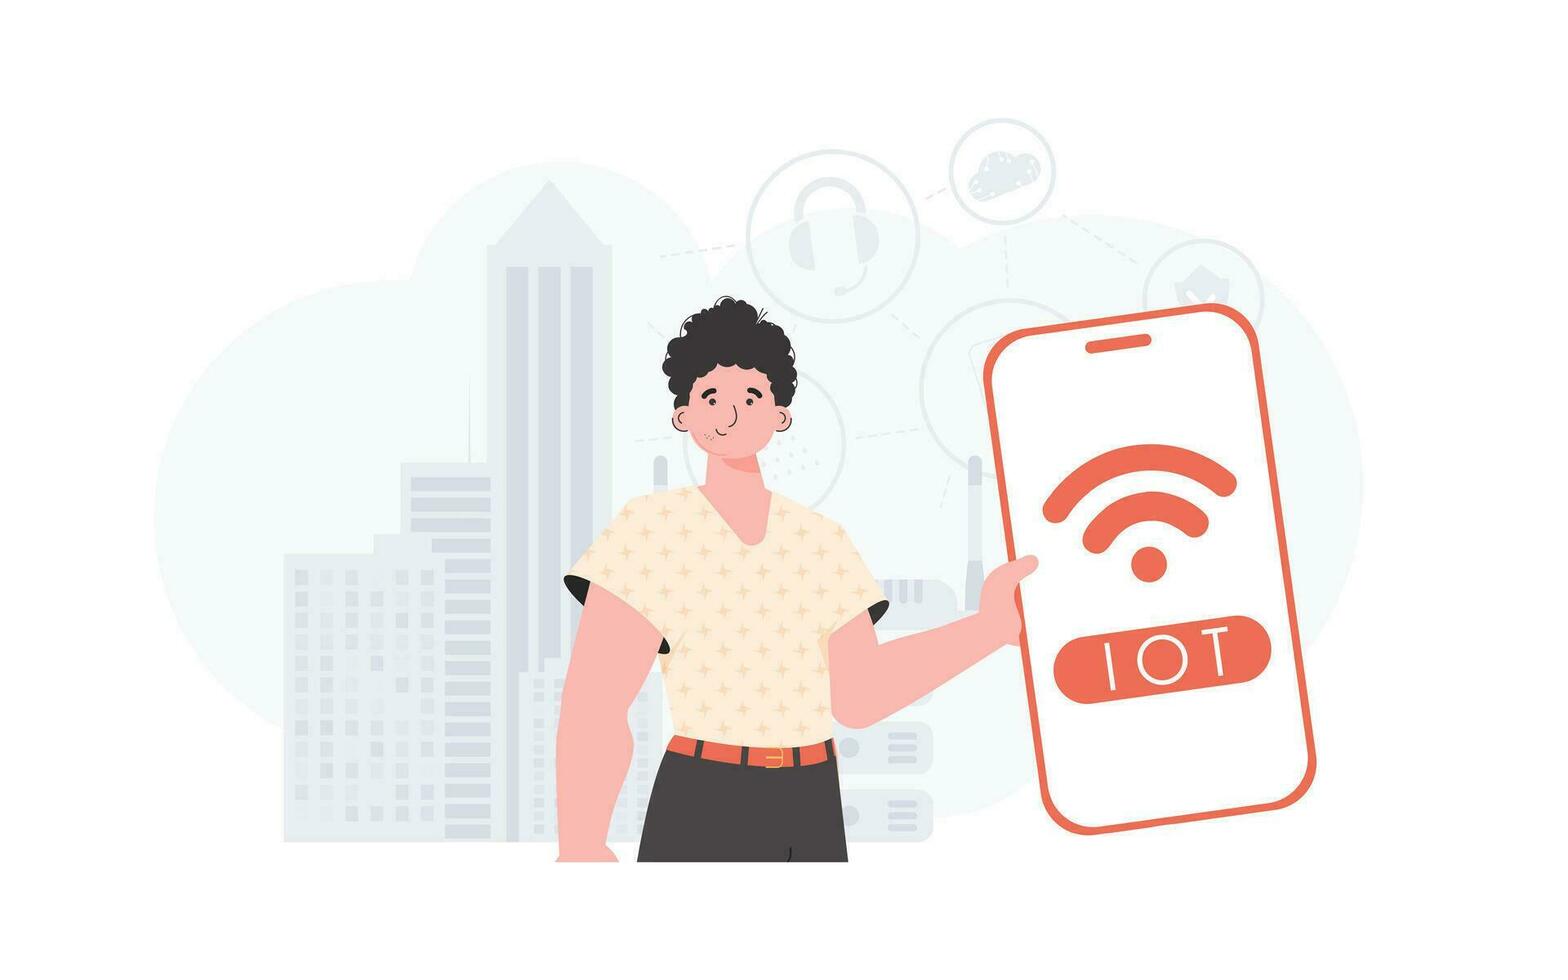 iot y automatización concepto. un hombre sostiene un teléfono con el iot logo en su manos. de moda plano estilo. vector ilustración.